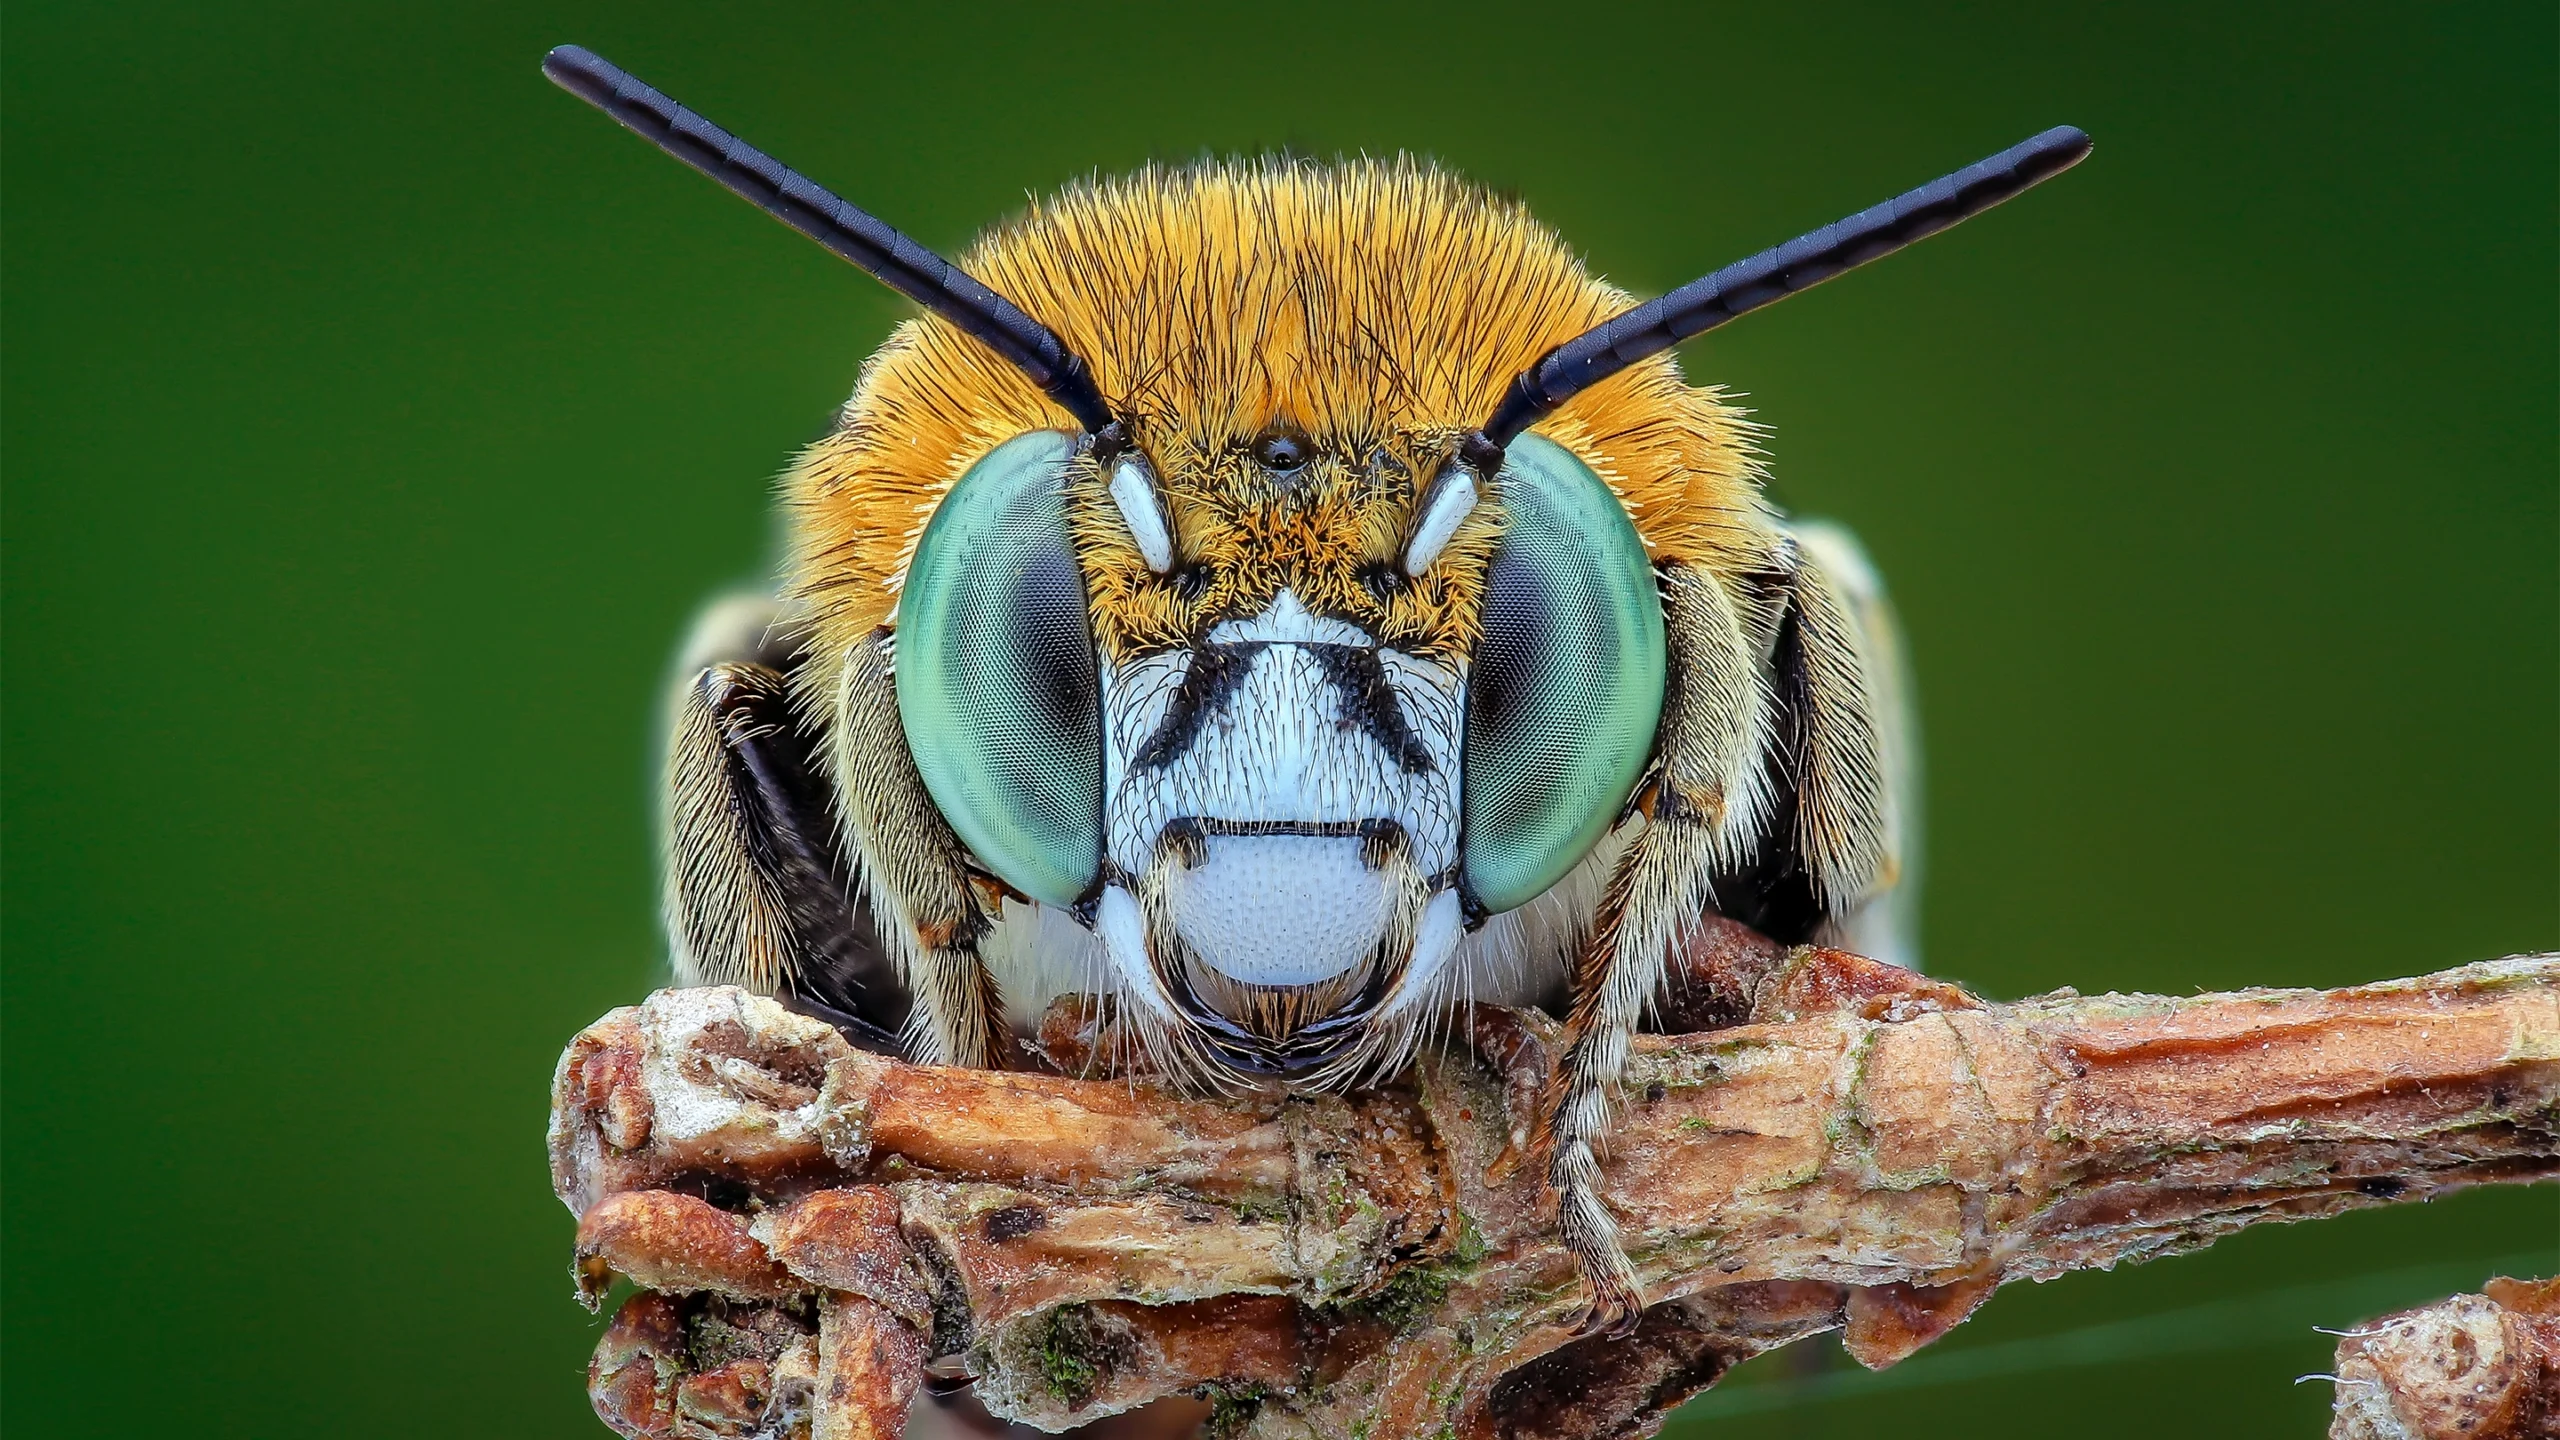 آگاهی در حشرات و سایر حیوانات: اجماع علمی جدید